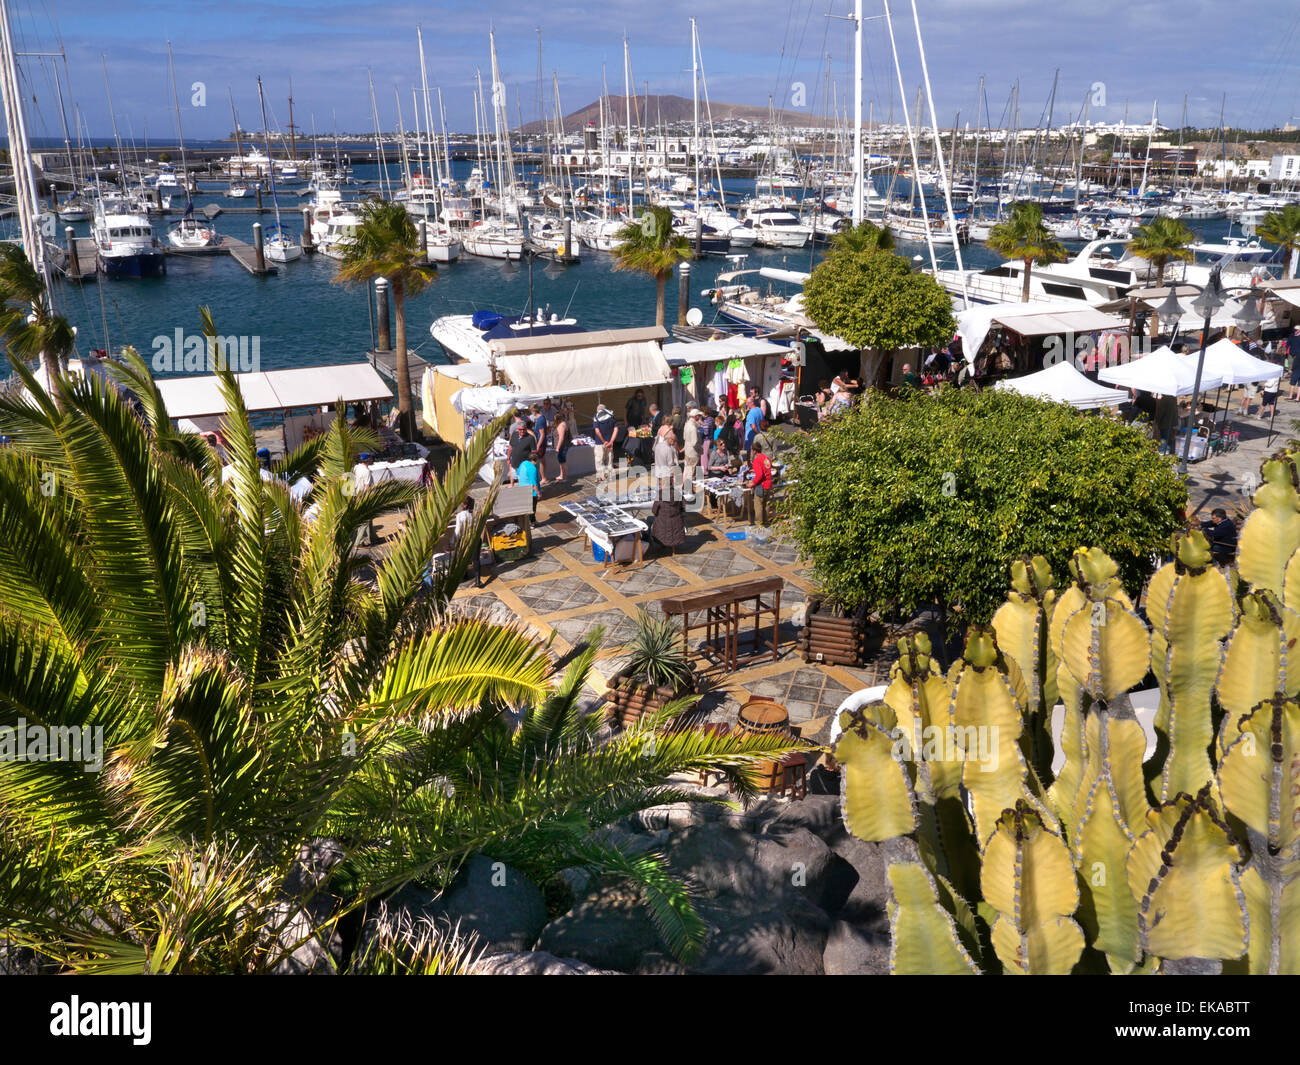 Marina Rubicon marché port de luxe yachts avec étals de marché hebdomadaire typique et aperçu Cactus Lanzarote Iles Canaries Espagne Banque D'Images